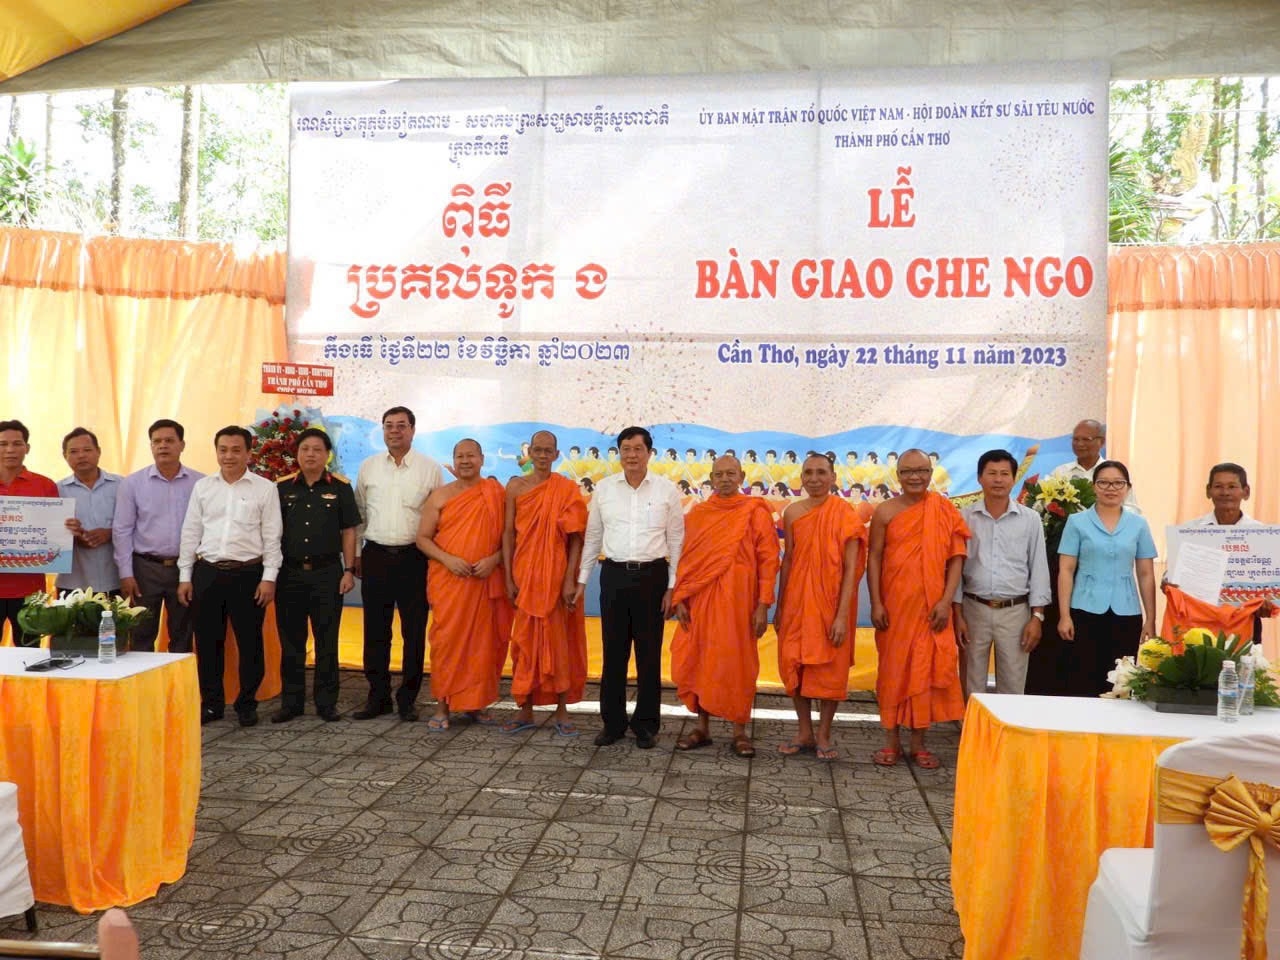 Lãnh đạo TP. Cần Thơ trao ghe Ngo mini cho các chùa Khmer 